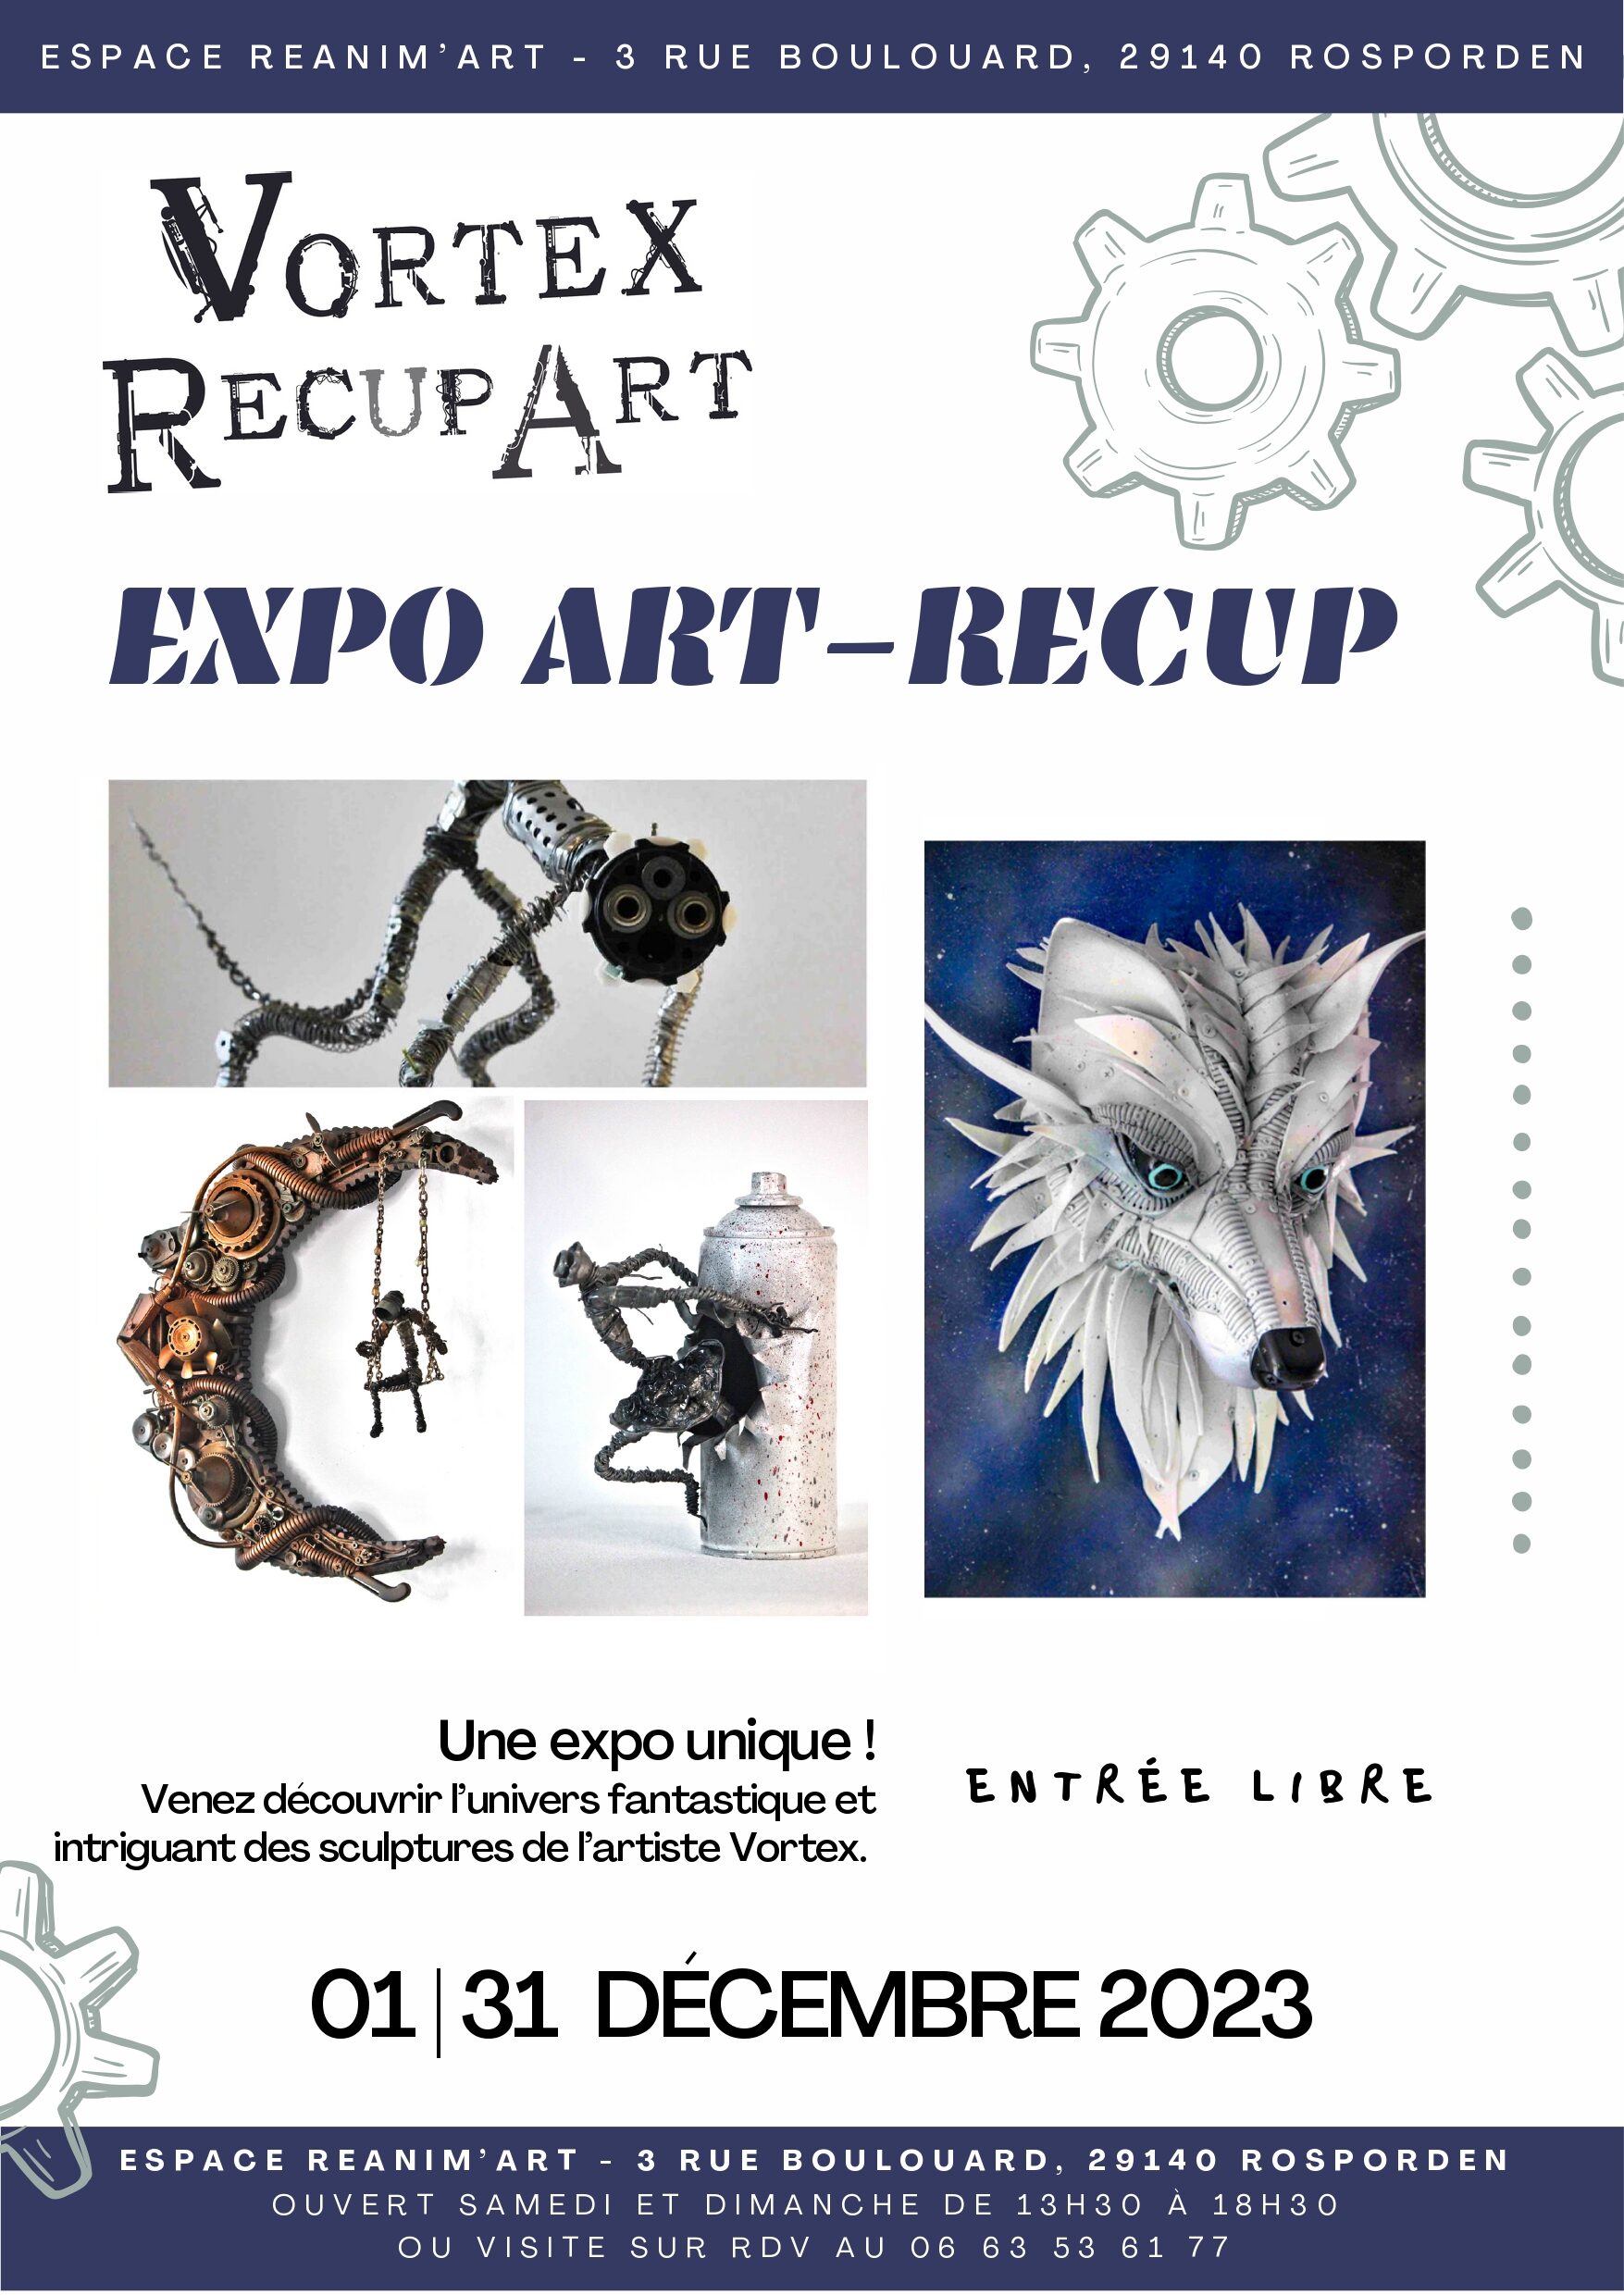 Expo Art-Récup par Vortex RecupArt